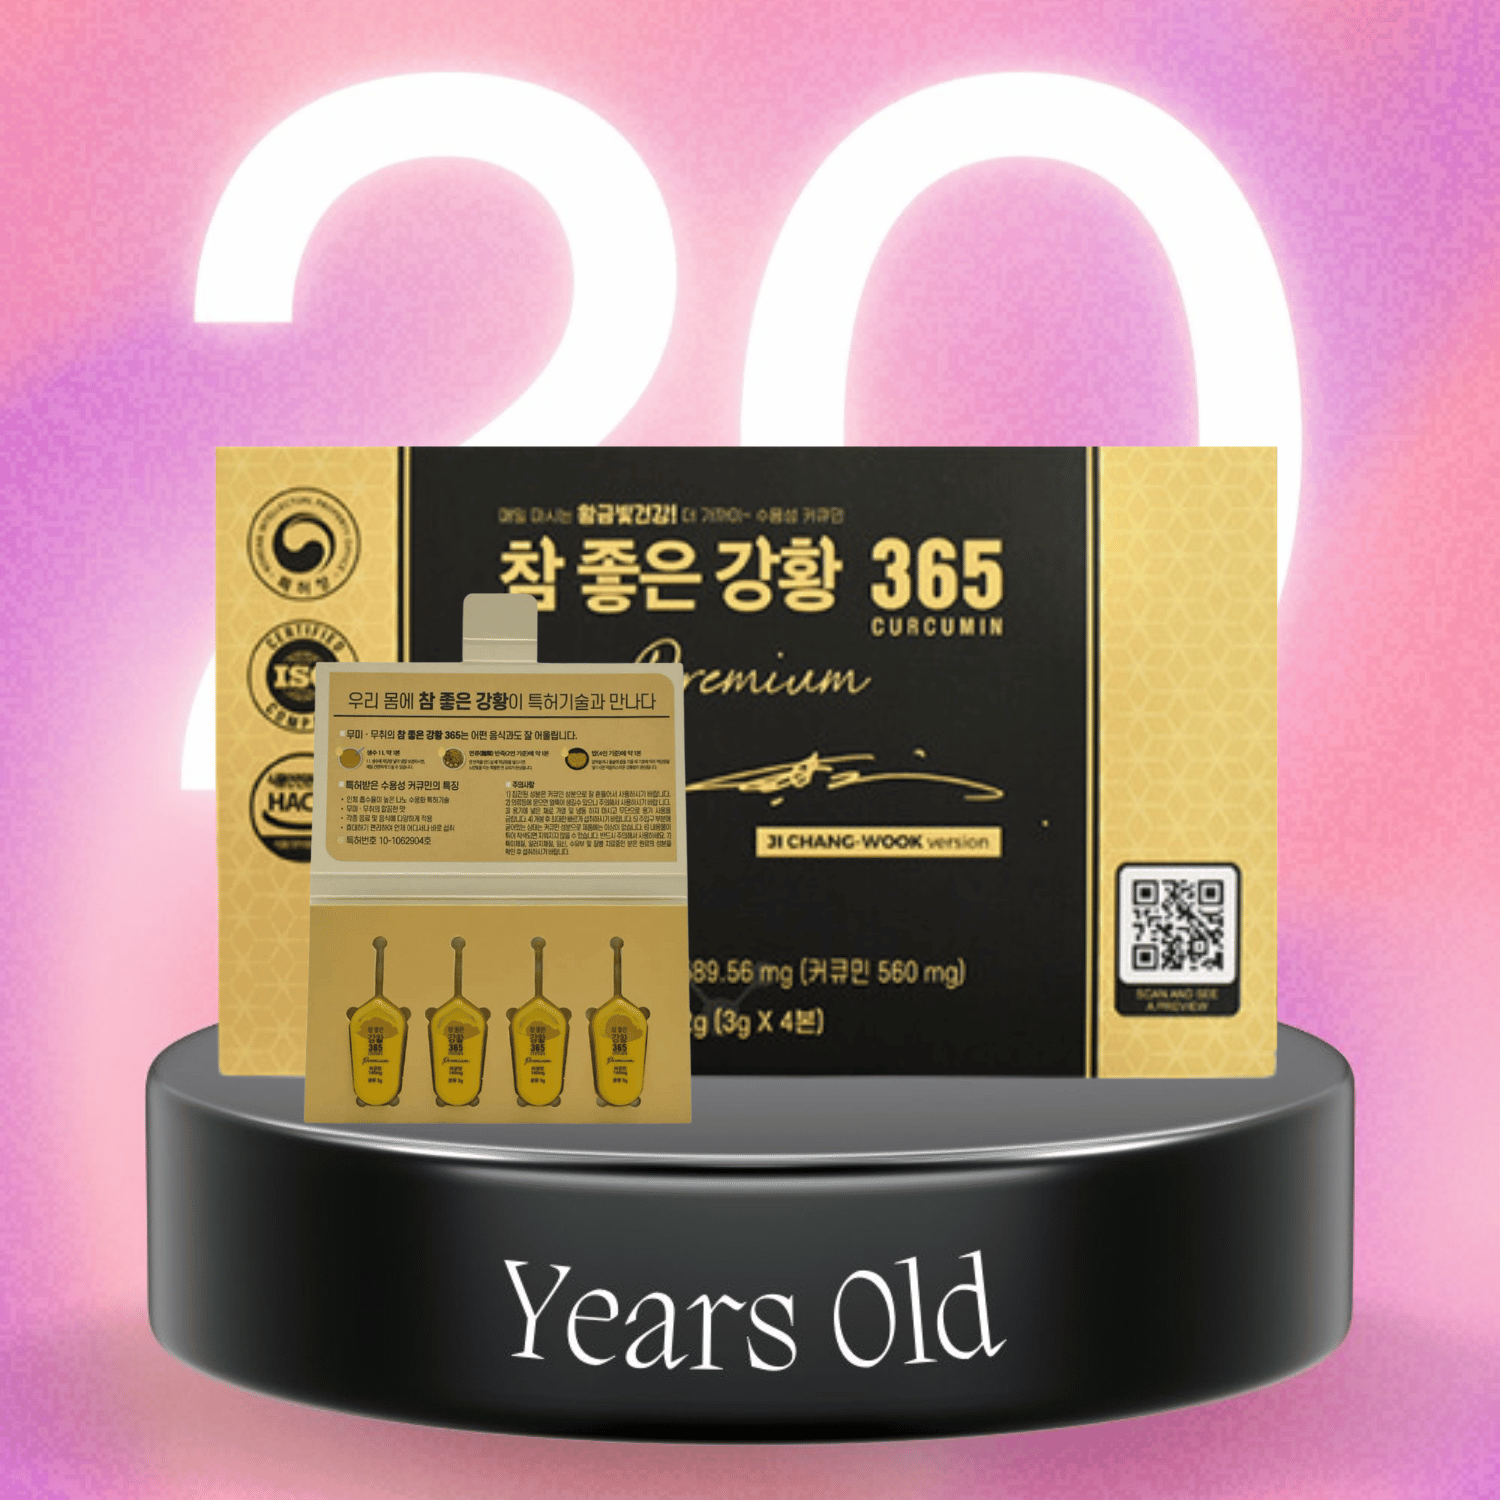 Tinh Chất Nghệ Vàng Nano Curcumin 365 Premiu Hàn Quốc